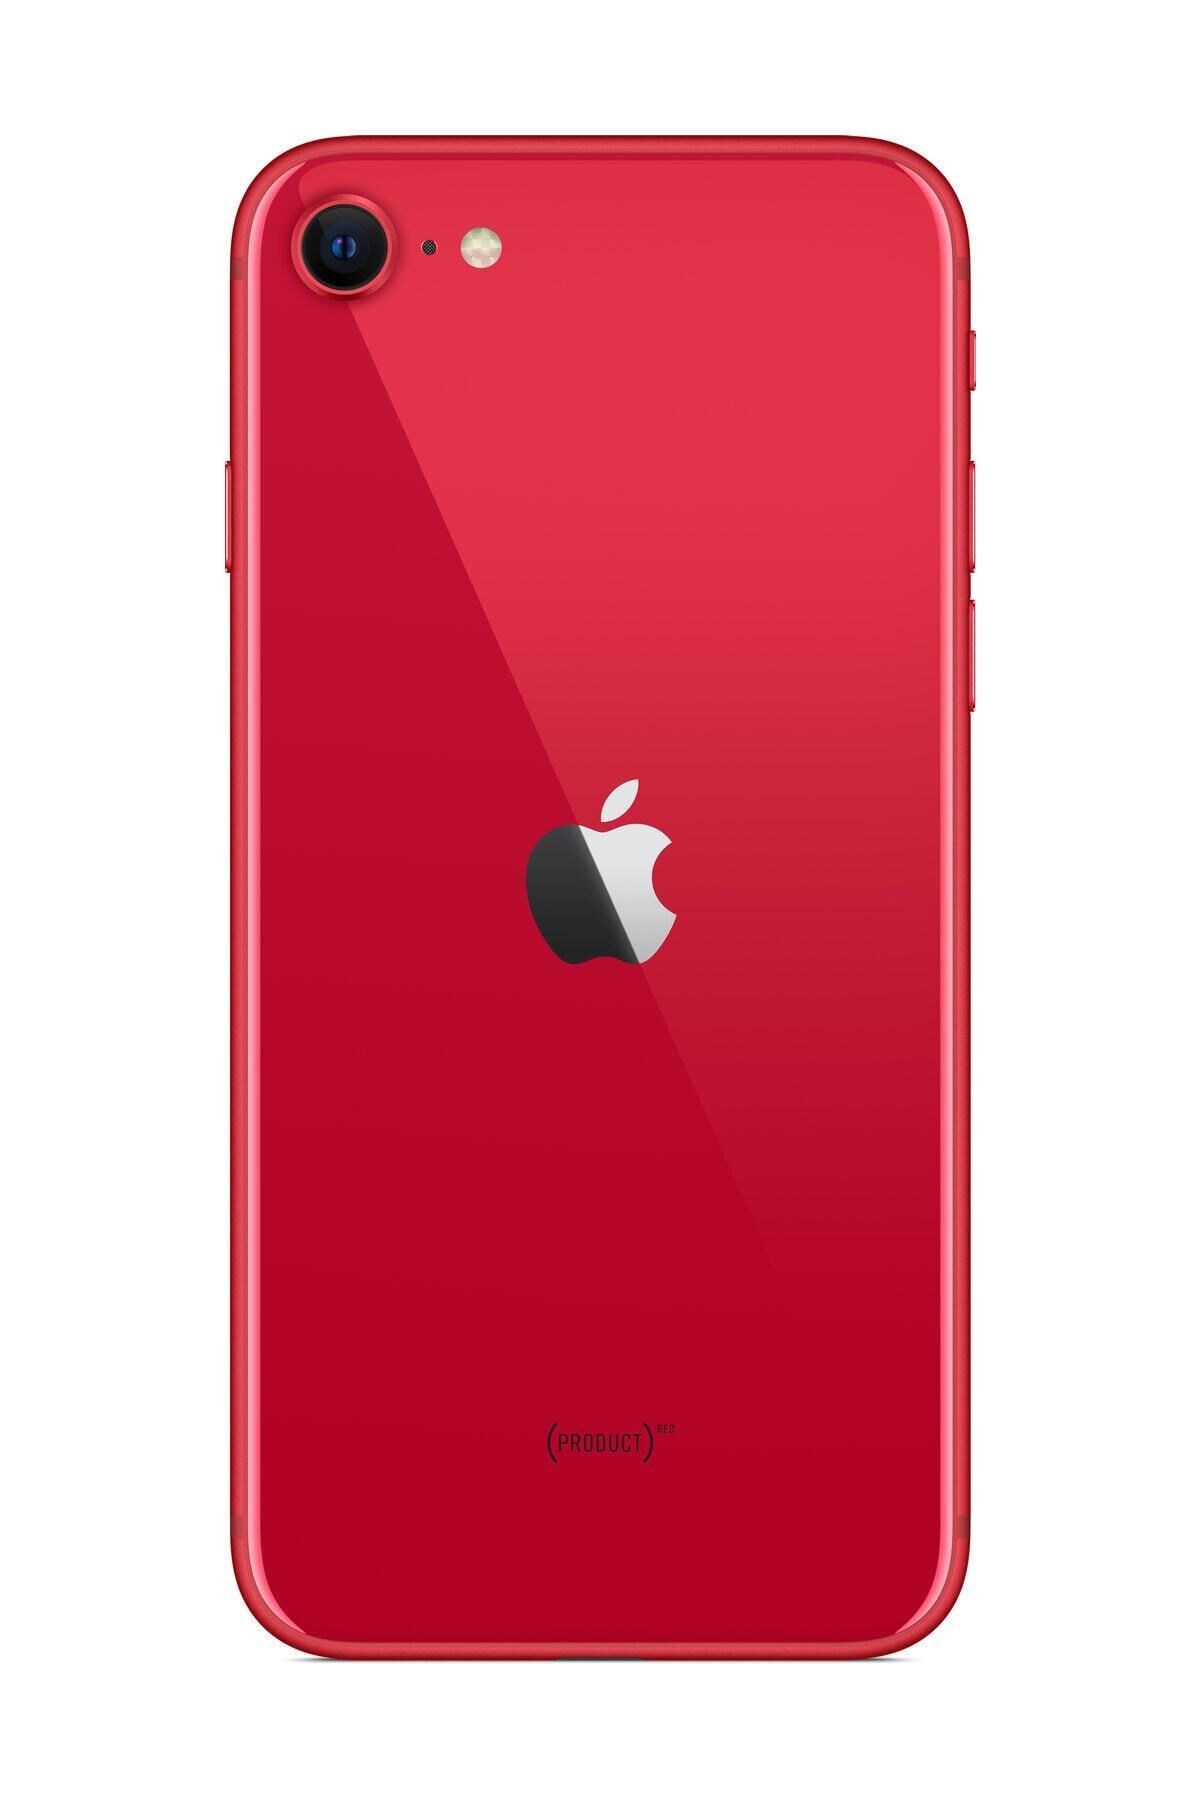 Apple Yenilenmiş iPhone SE 2020 128GB Kırmızı B Kalite